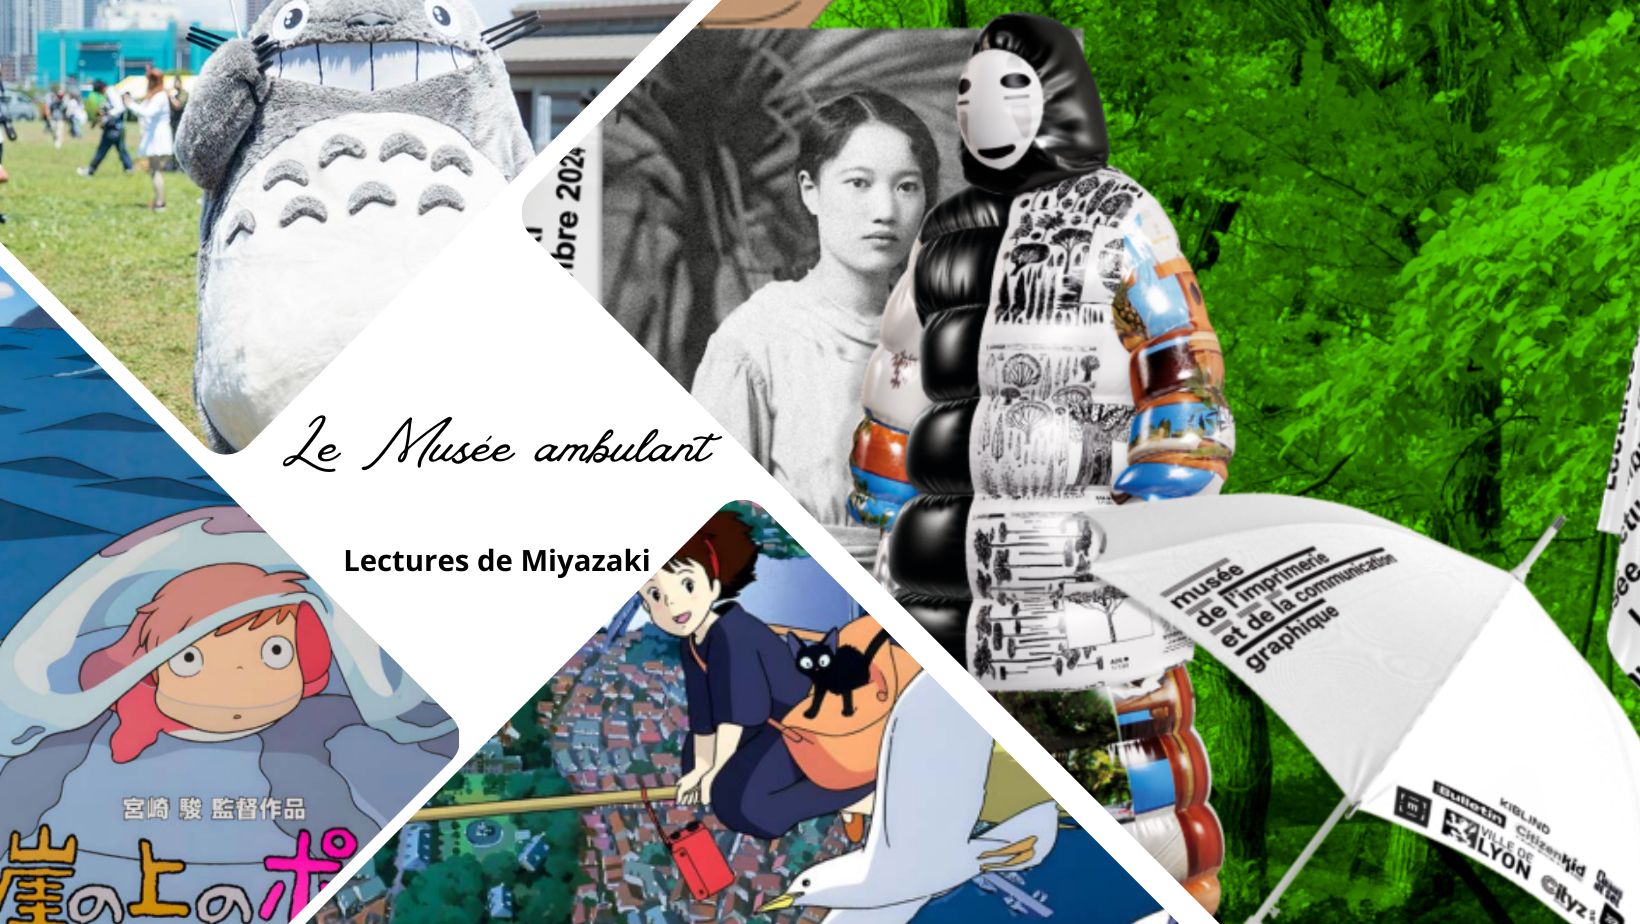 Le musée Ambulant – Lectures de Miyazaki, une exposition sur toutes les inspirations du maître